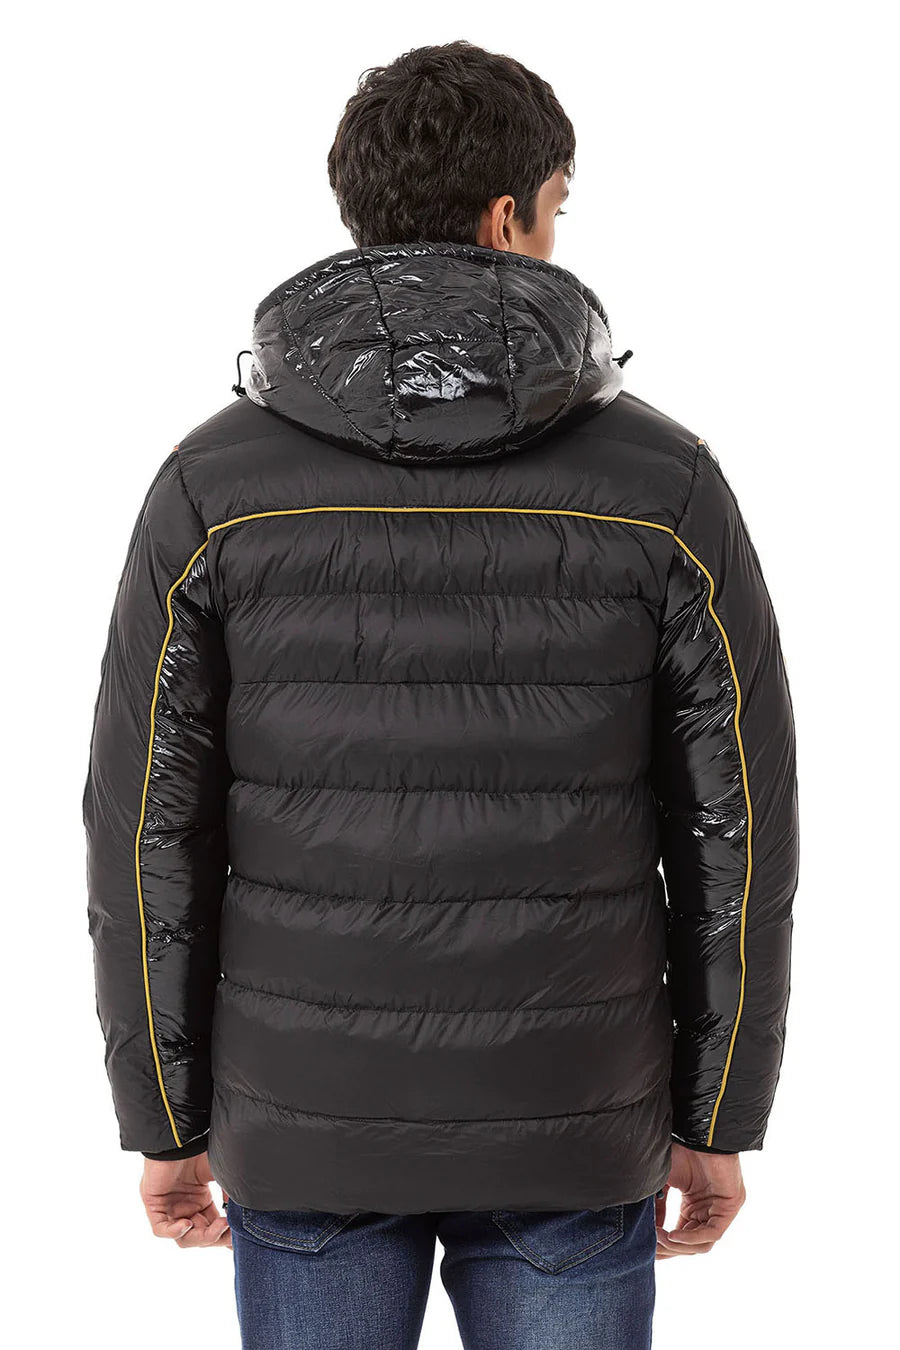 CM218 men's winter jacket